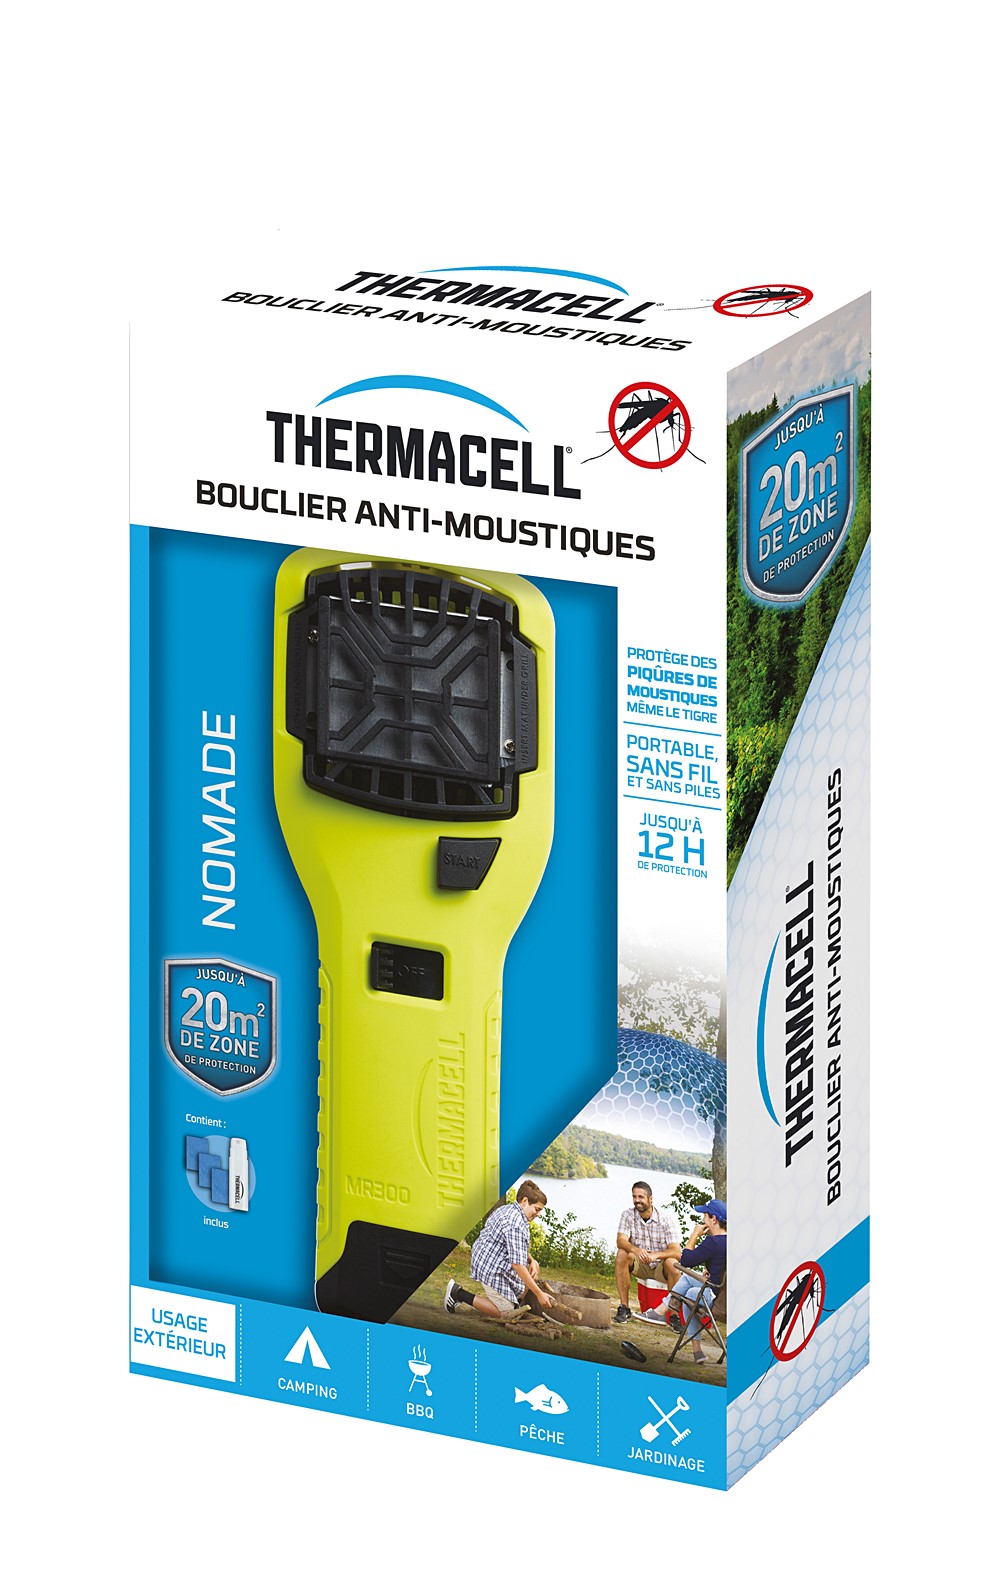 Bouclier anti-moustiques portable vert anis 1 Diffuseur + 1 Cartouche de Butane + 3 Plaquettes de 4H - THERMACELL 